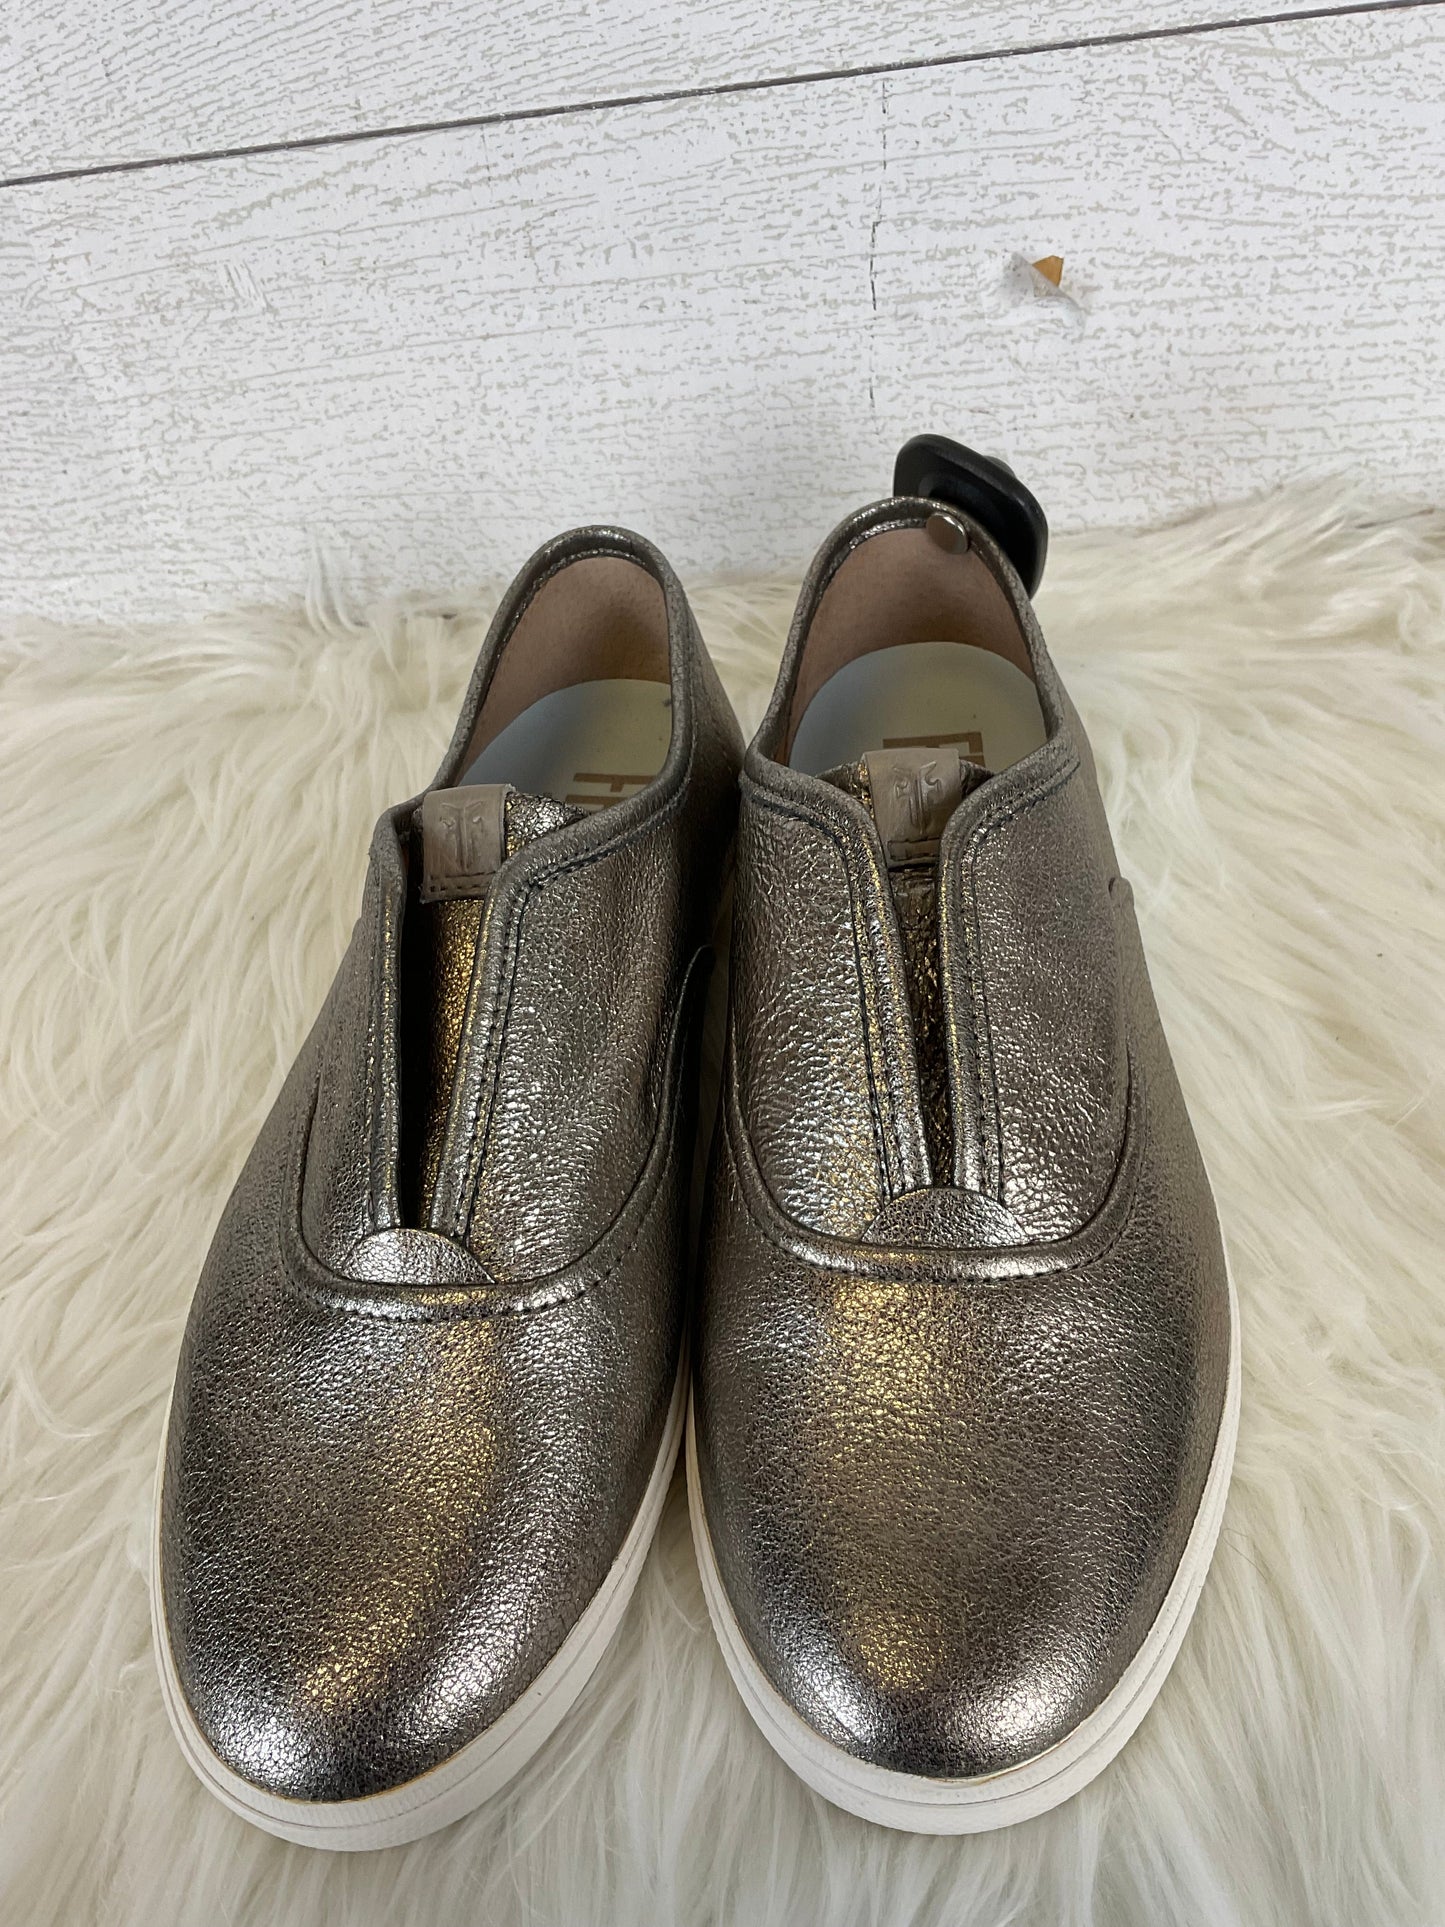 Silver Shoes Designer Frye, Size 8